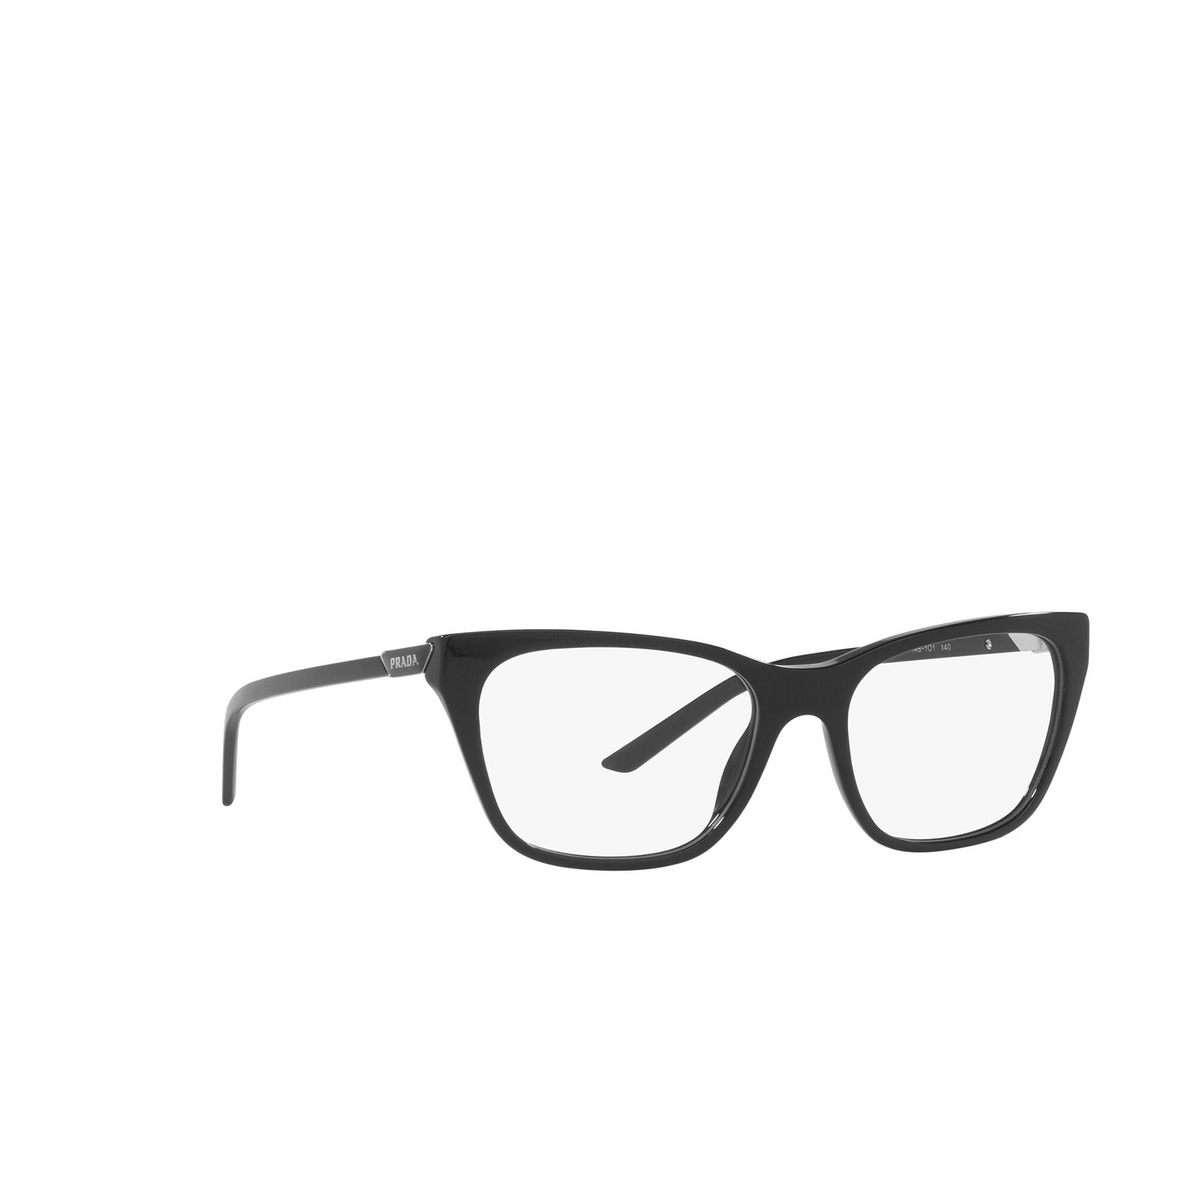 Prada® Butterfly Eyeglasses: PR 05YV color Black 1AB1O1 - three-quarters view.